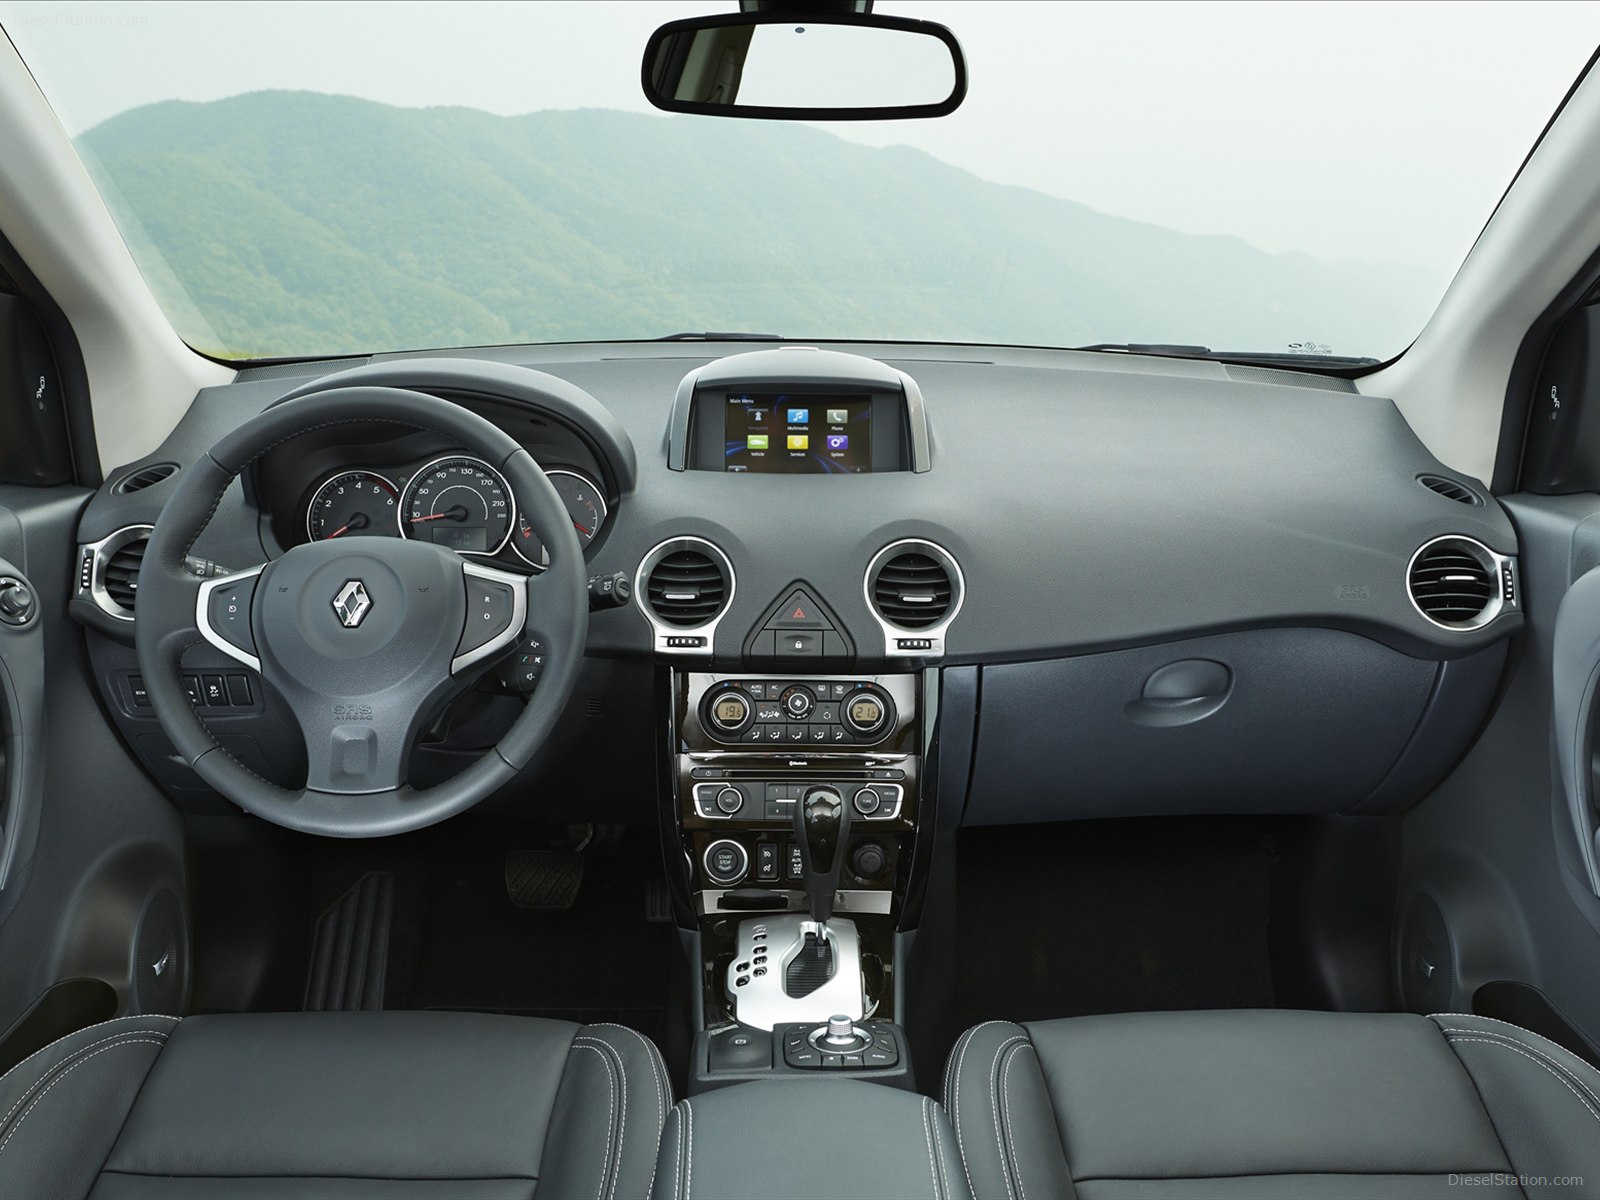 Renault Koleos 2014 - интерьер салона